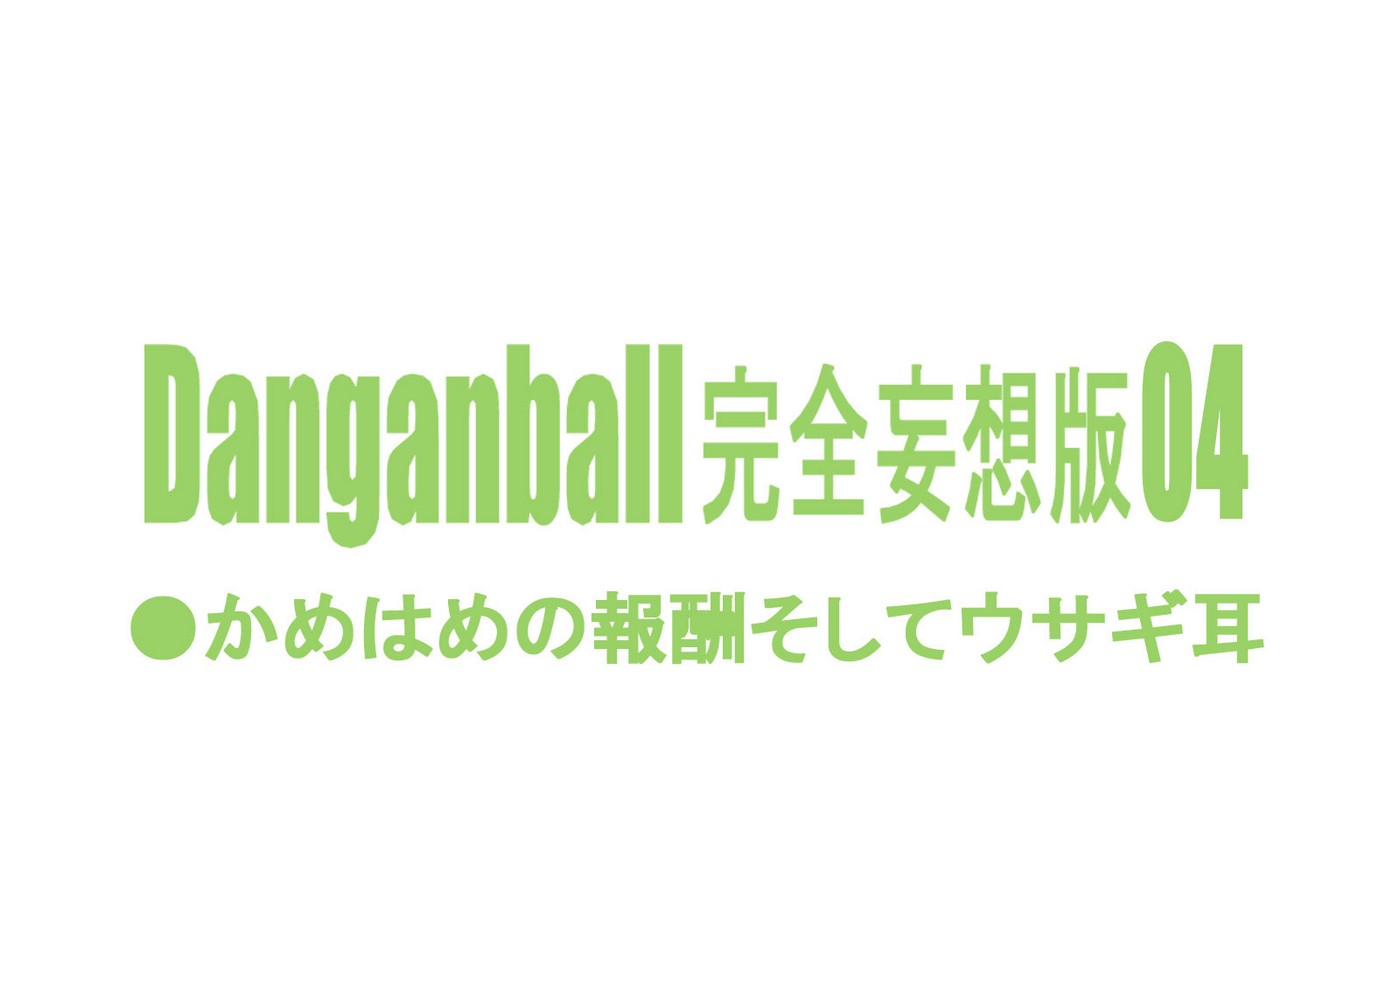 Danganball 4 Danganminorz 02